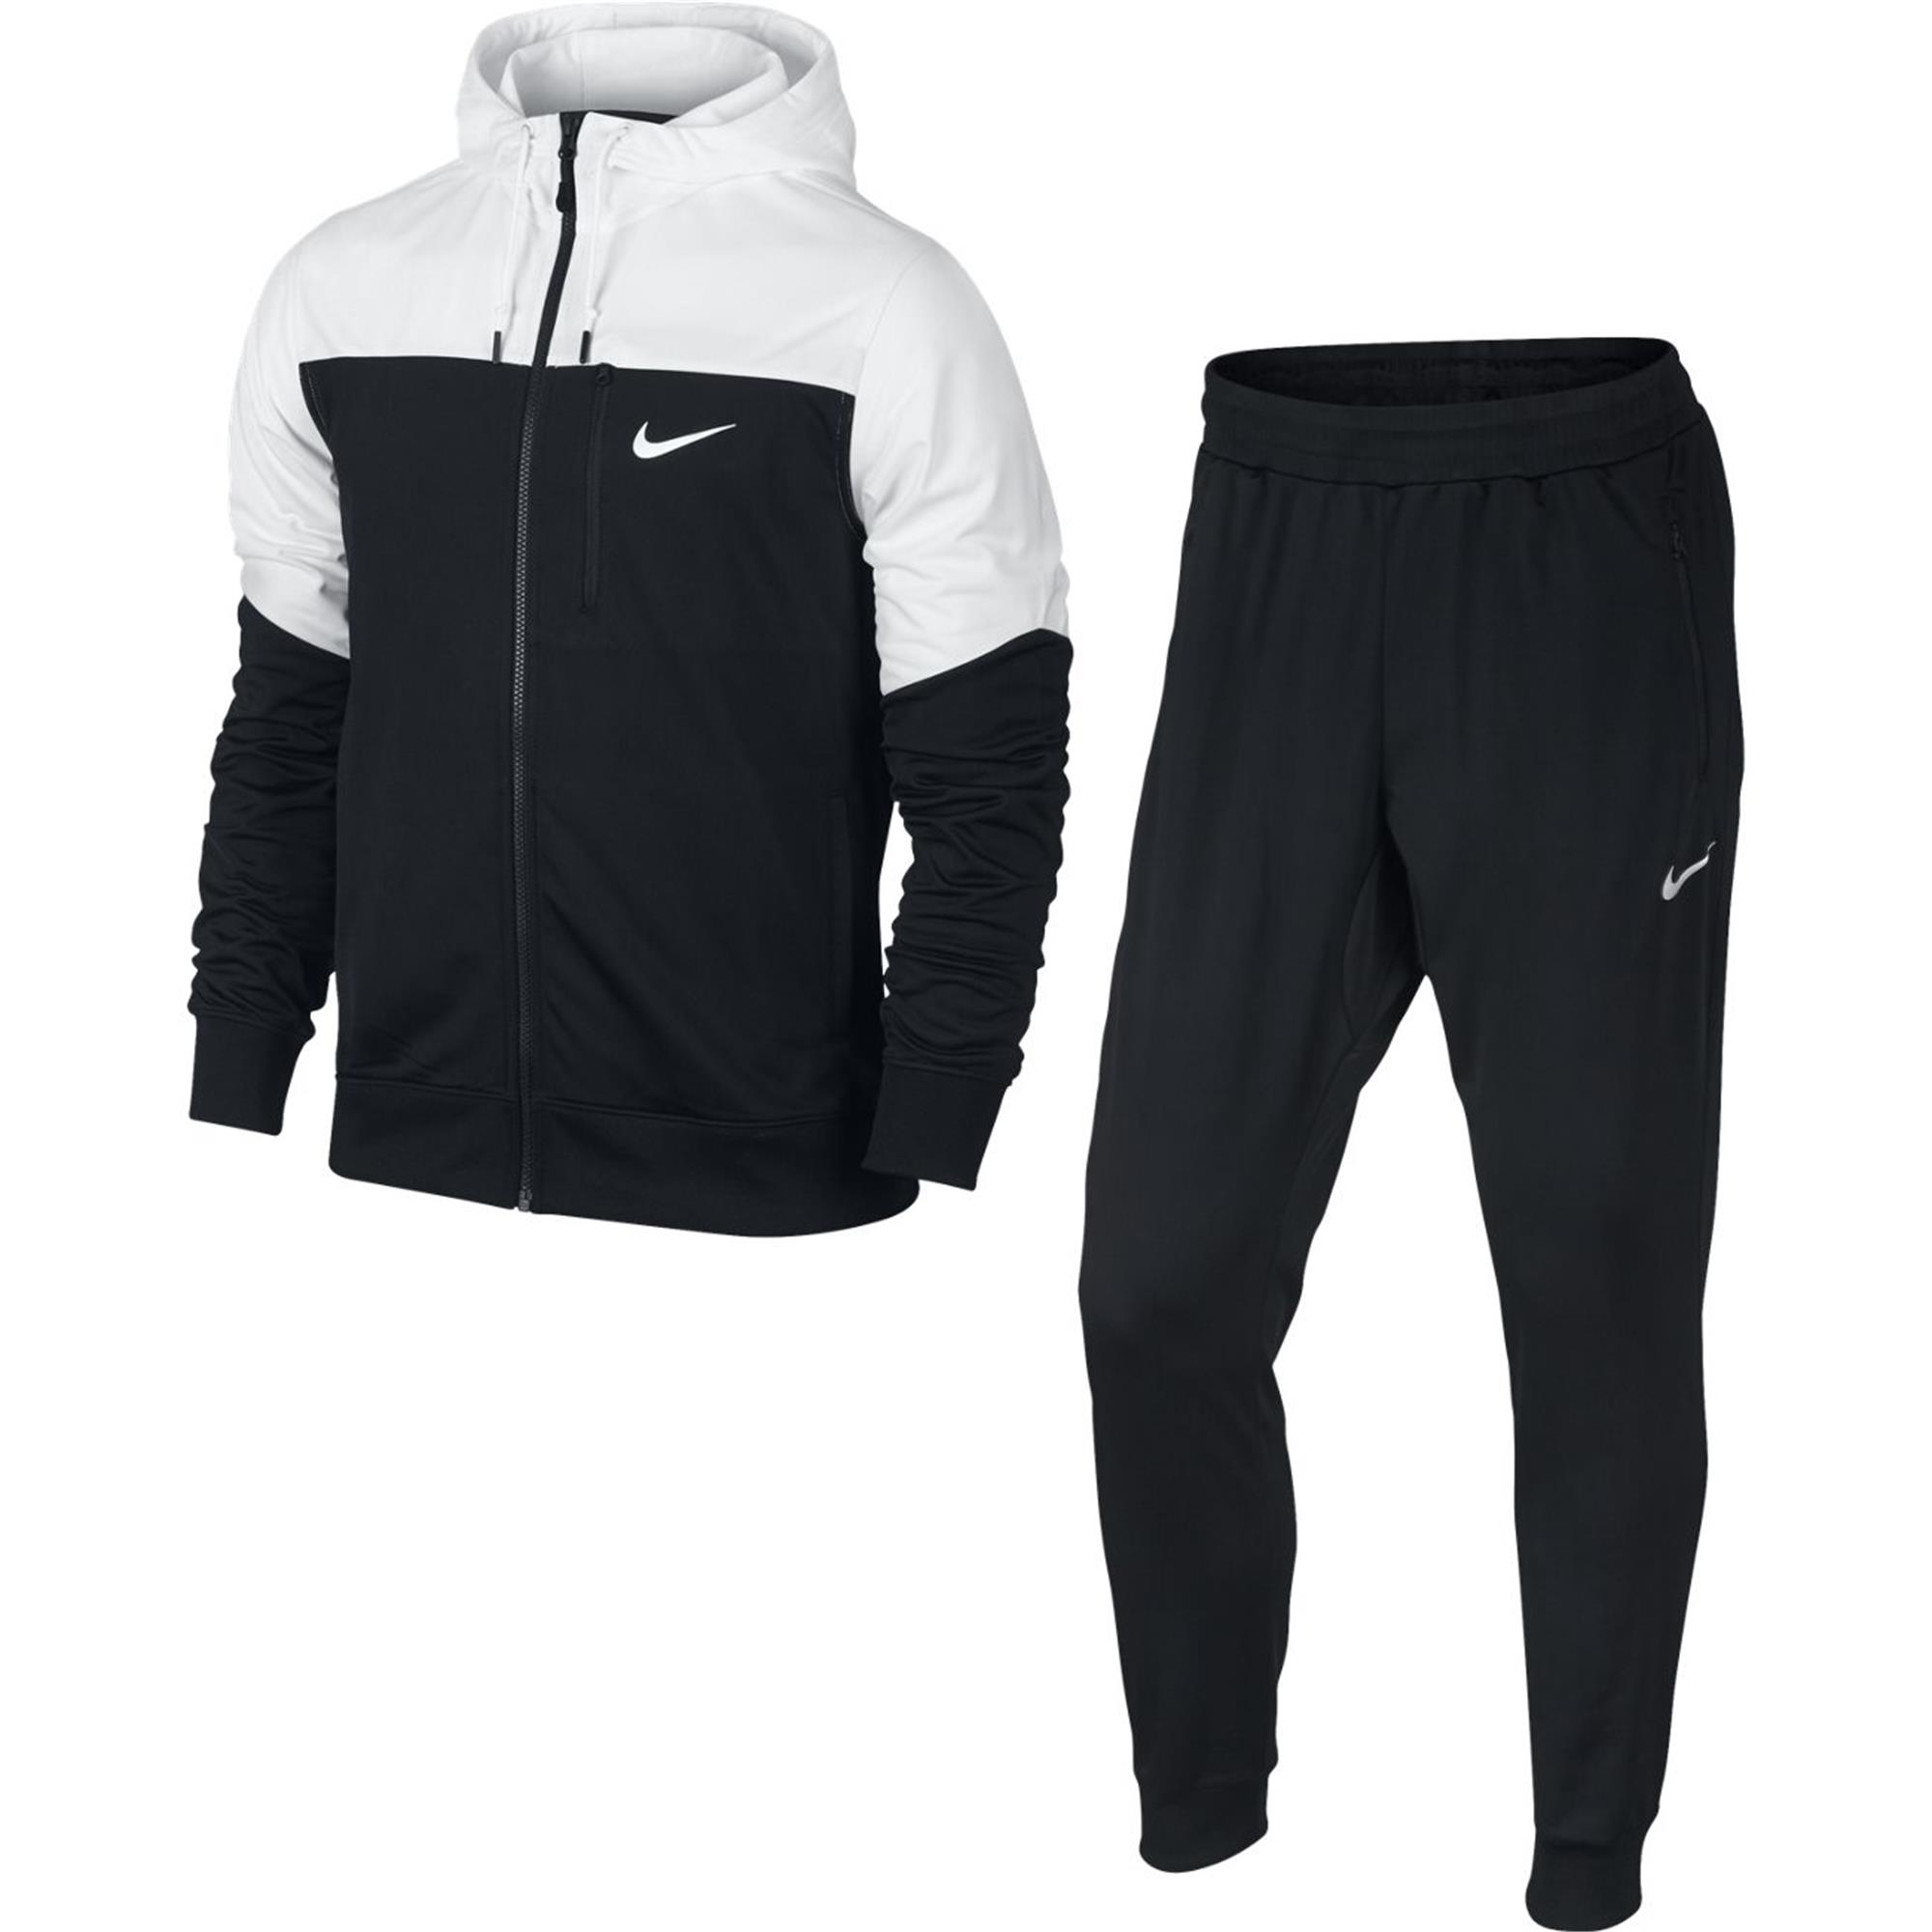 Nike Advance 15 Track Suit Erkek Eşofman Takımı 727613-100 | Etichet Sport